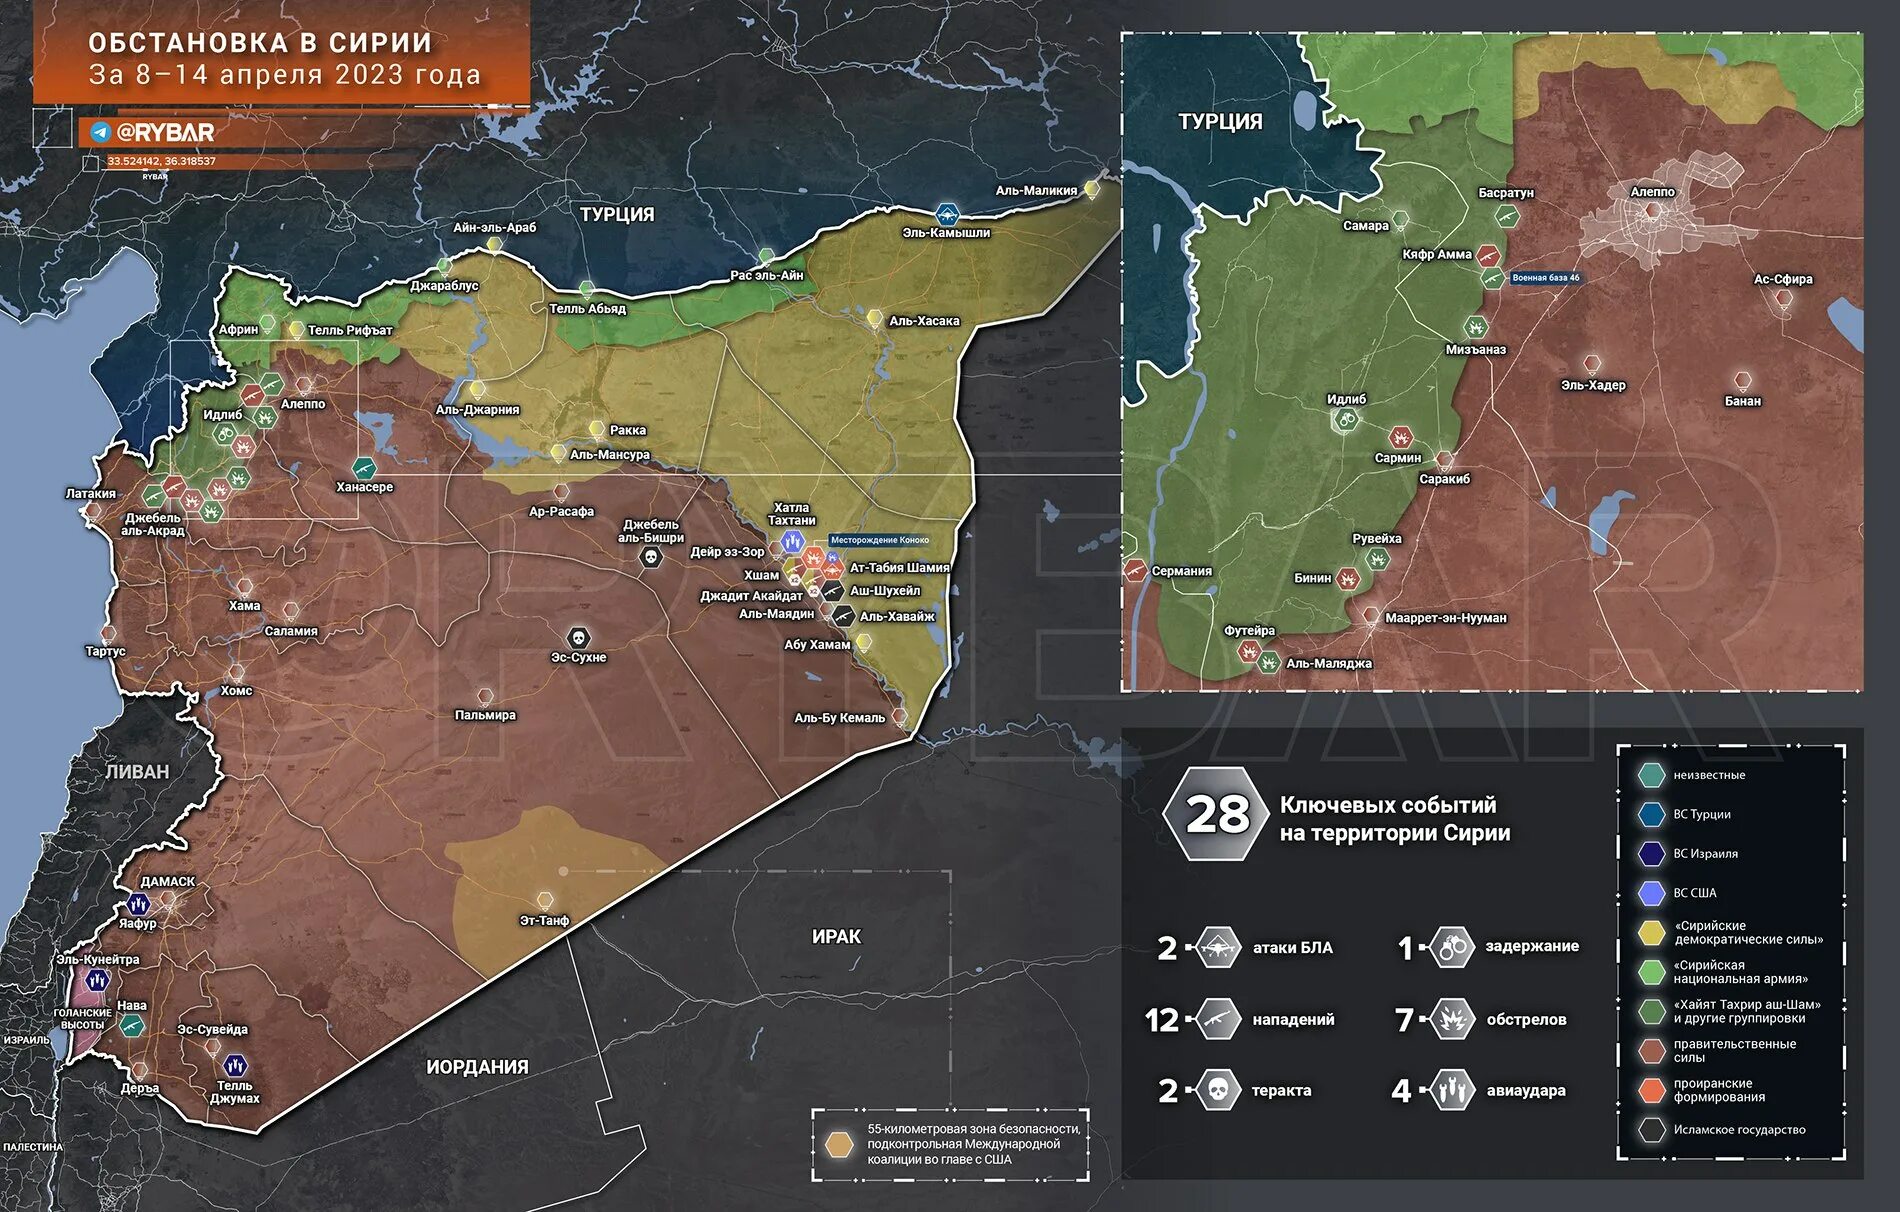 Обзор карты боевых действий сирии сегодня. Сирия 2023. Карта войны в Сирии 2023. Карта контроля территории Сирии 2023. Военная карта Сирии 2023.